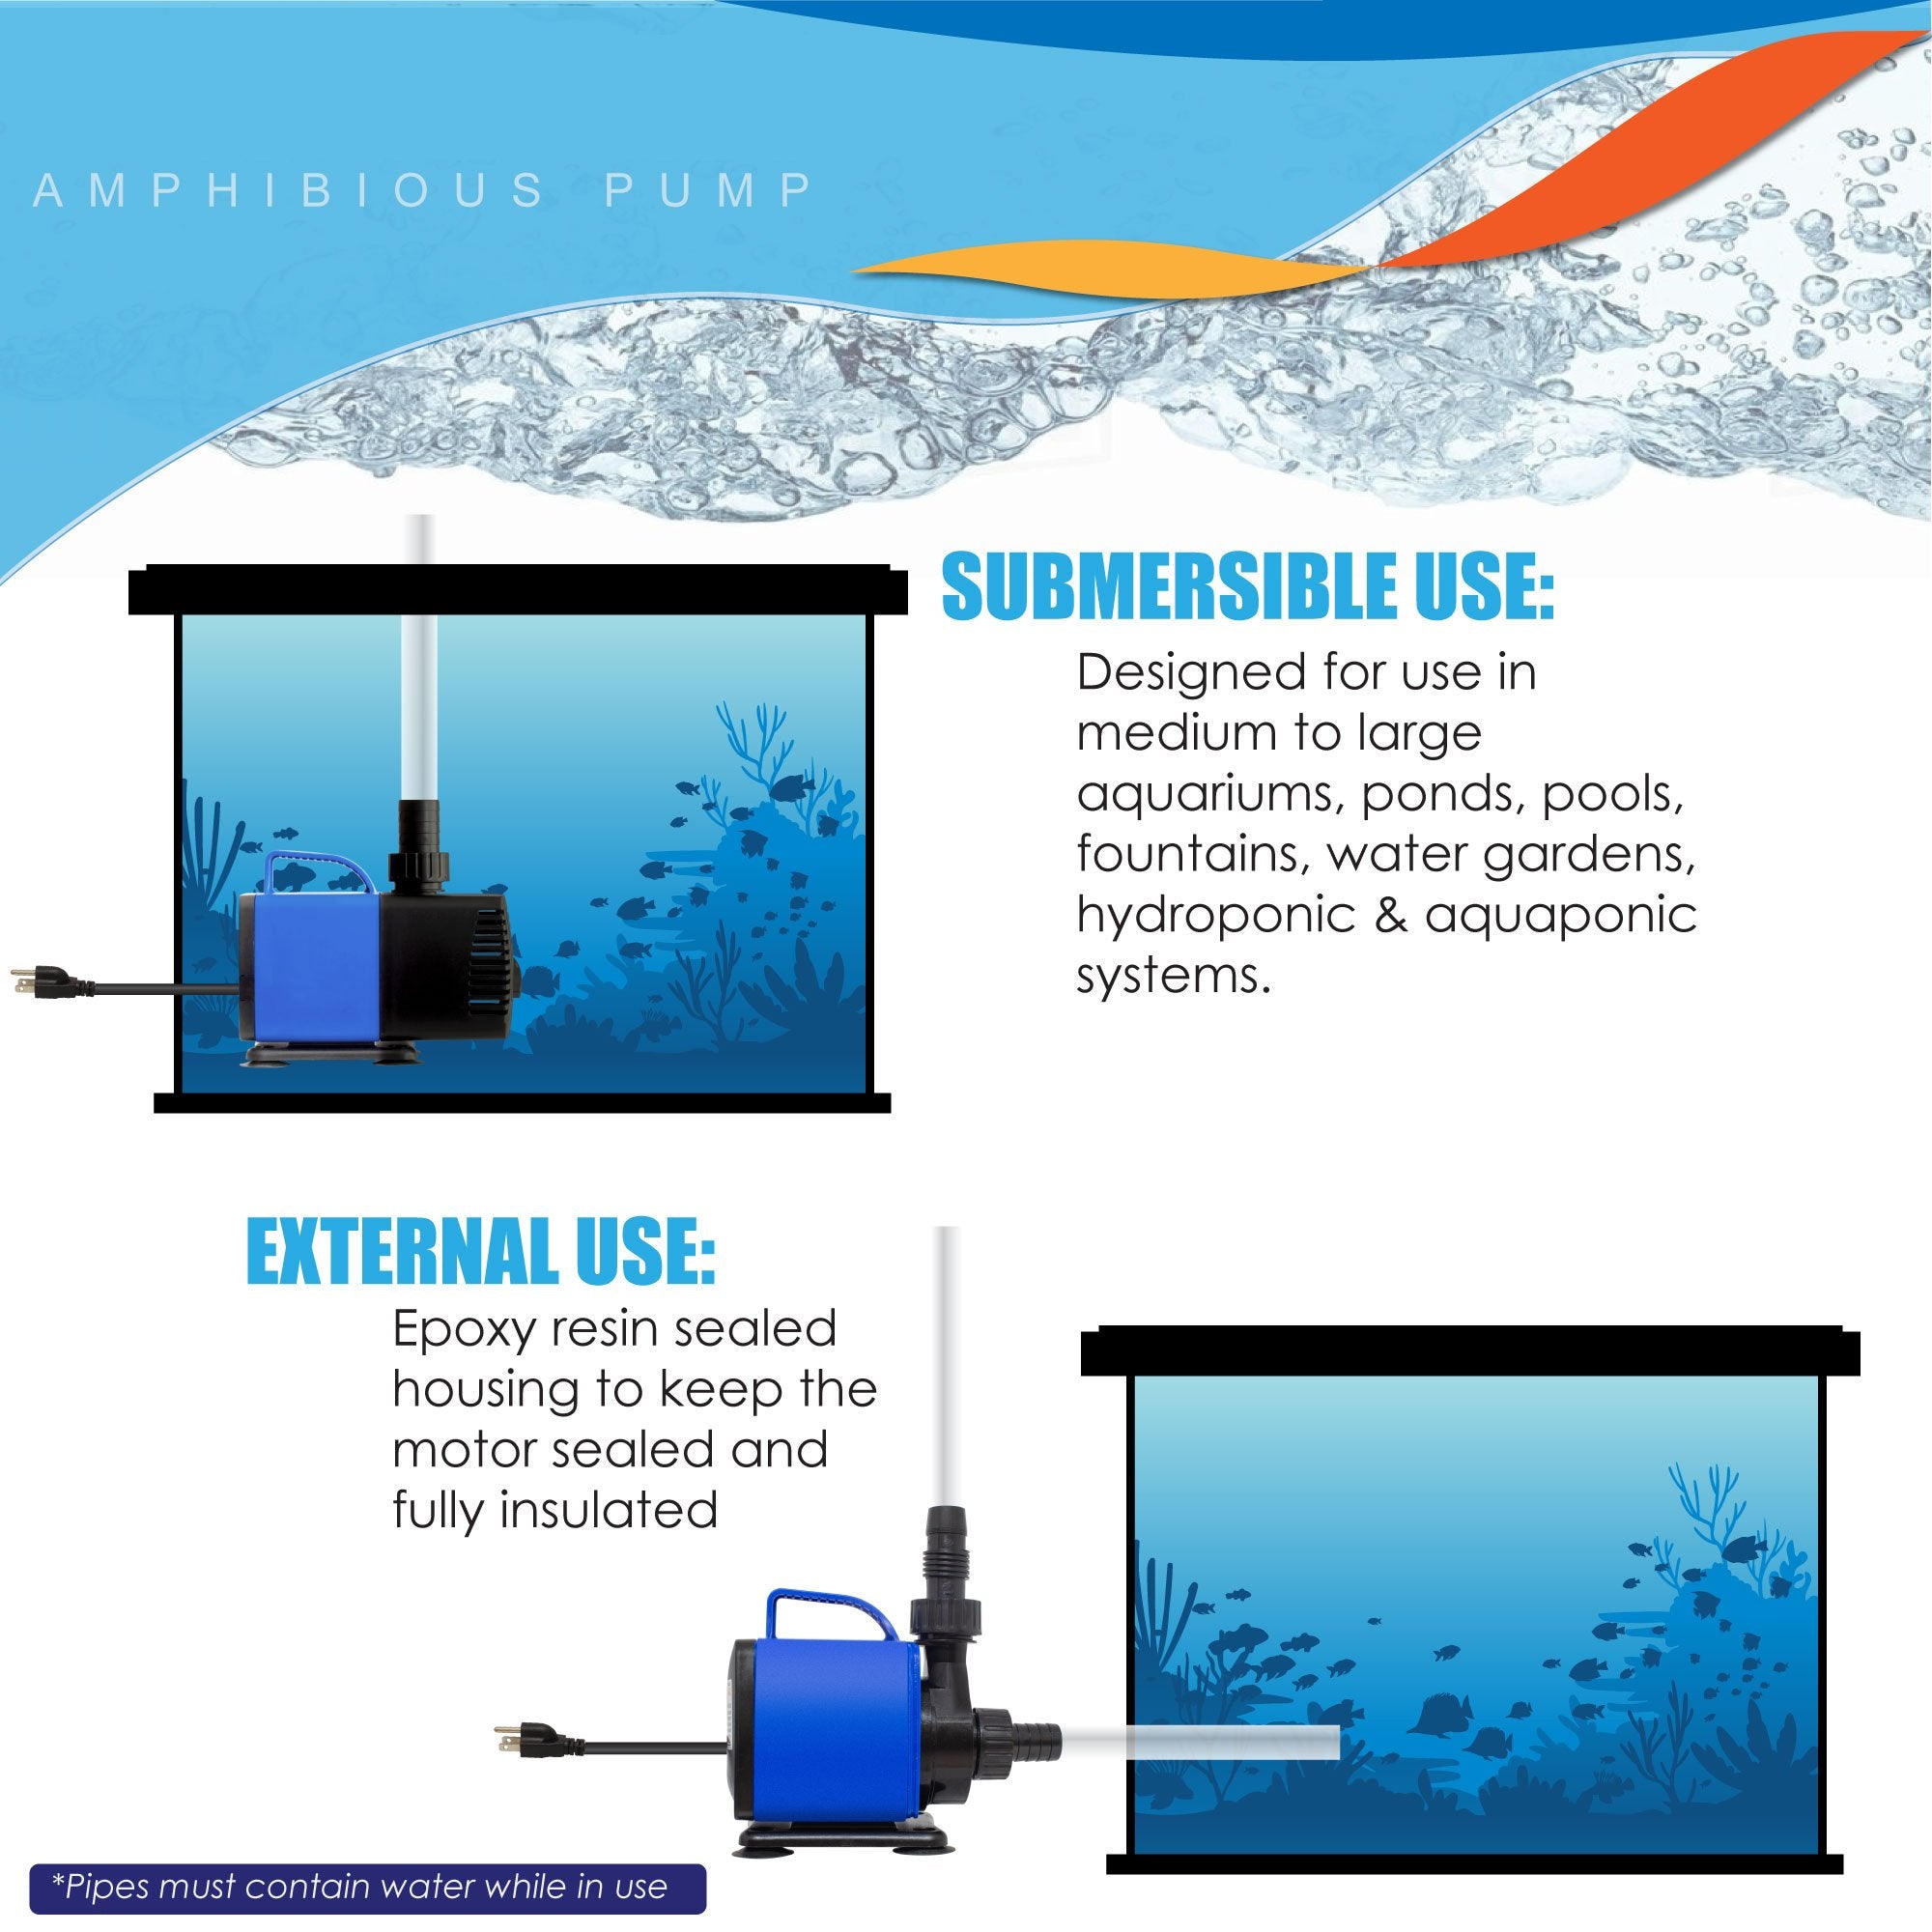 Aqua Dream 1200 GPH Adjustable Submersible Pump